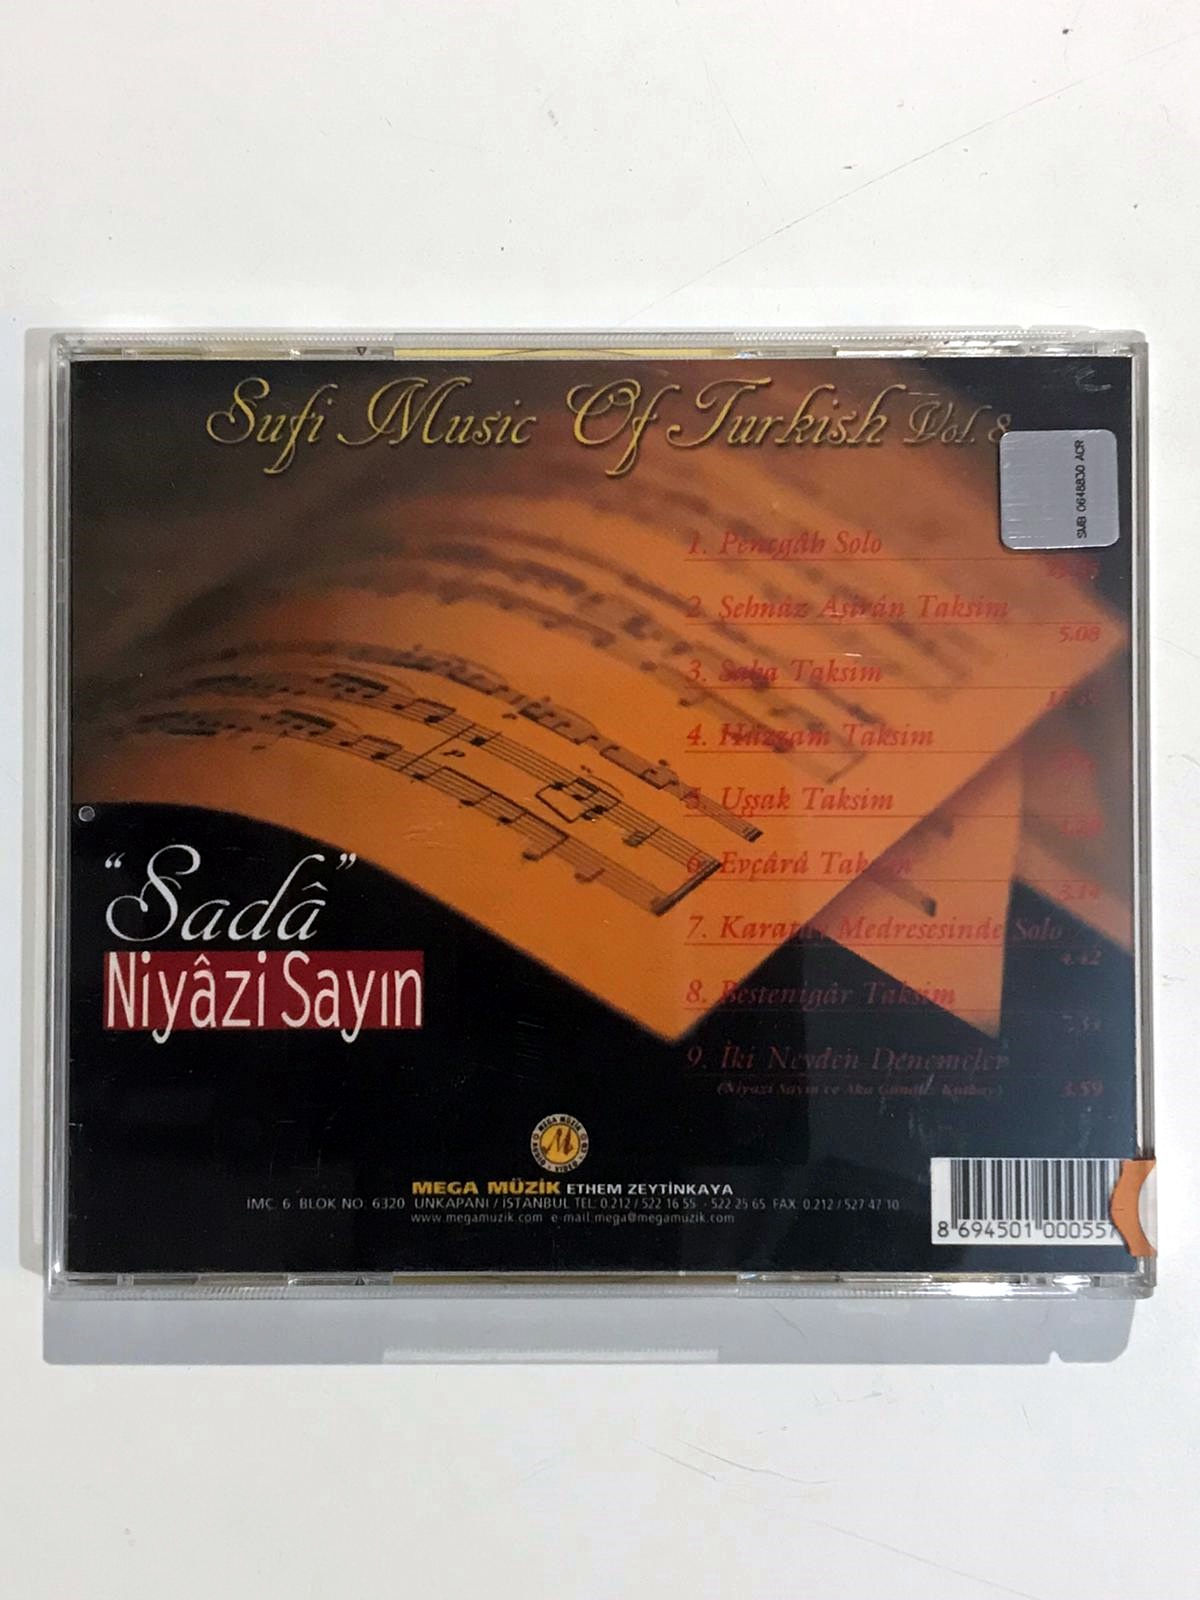 Sada / Niyazi SAYIN - Cd